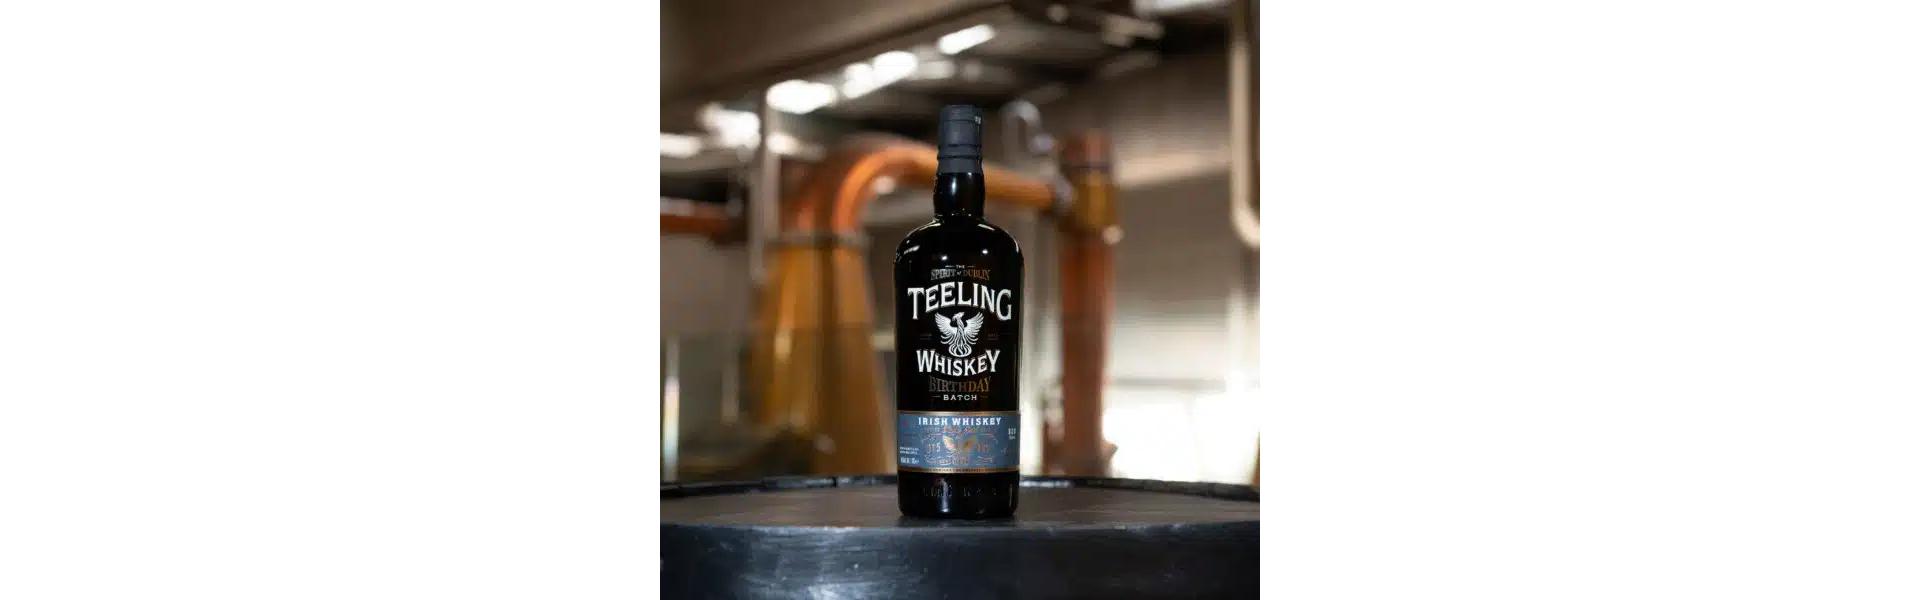 Teeling Distillery feiert 8. Geburtstag – mit Teeling Whiskey Birthday Batch und Video